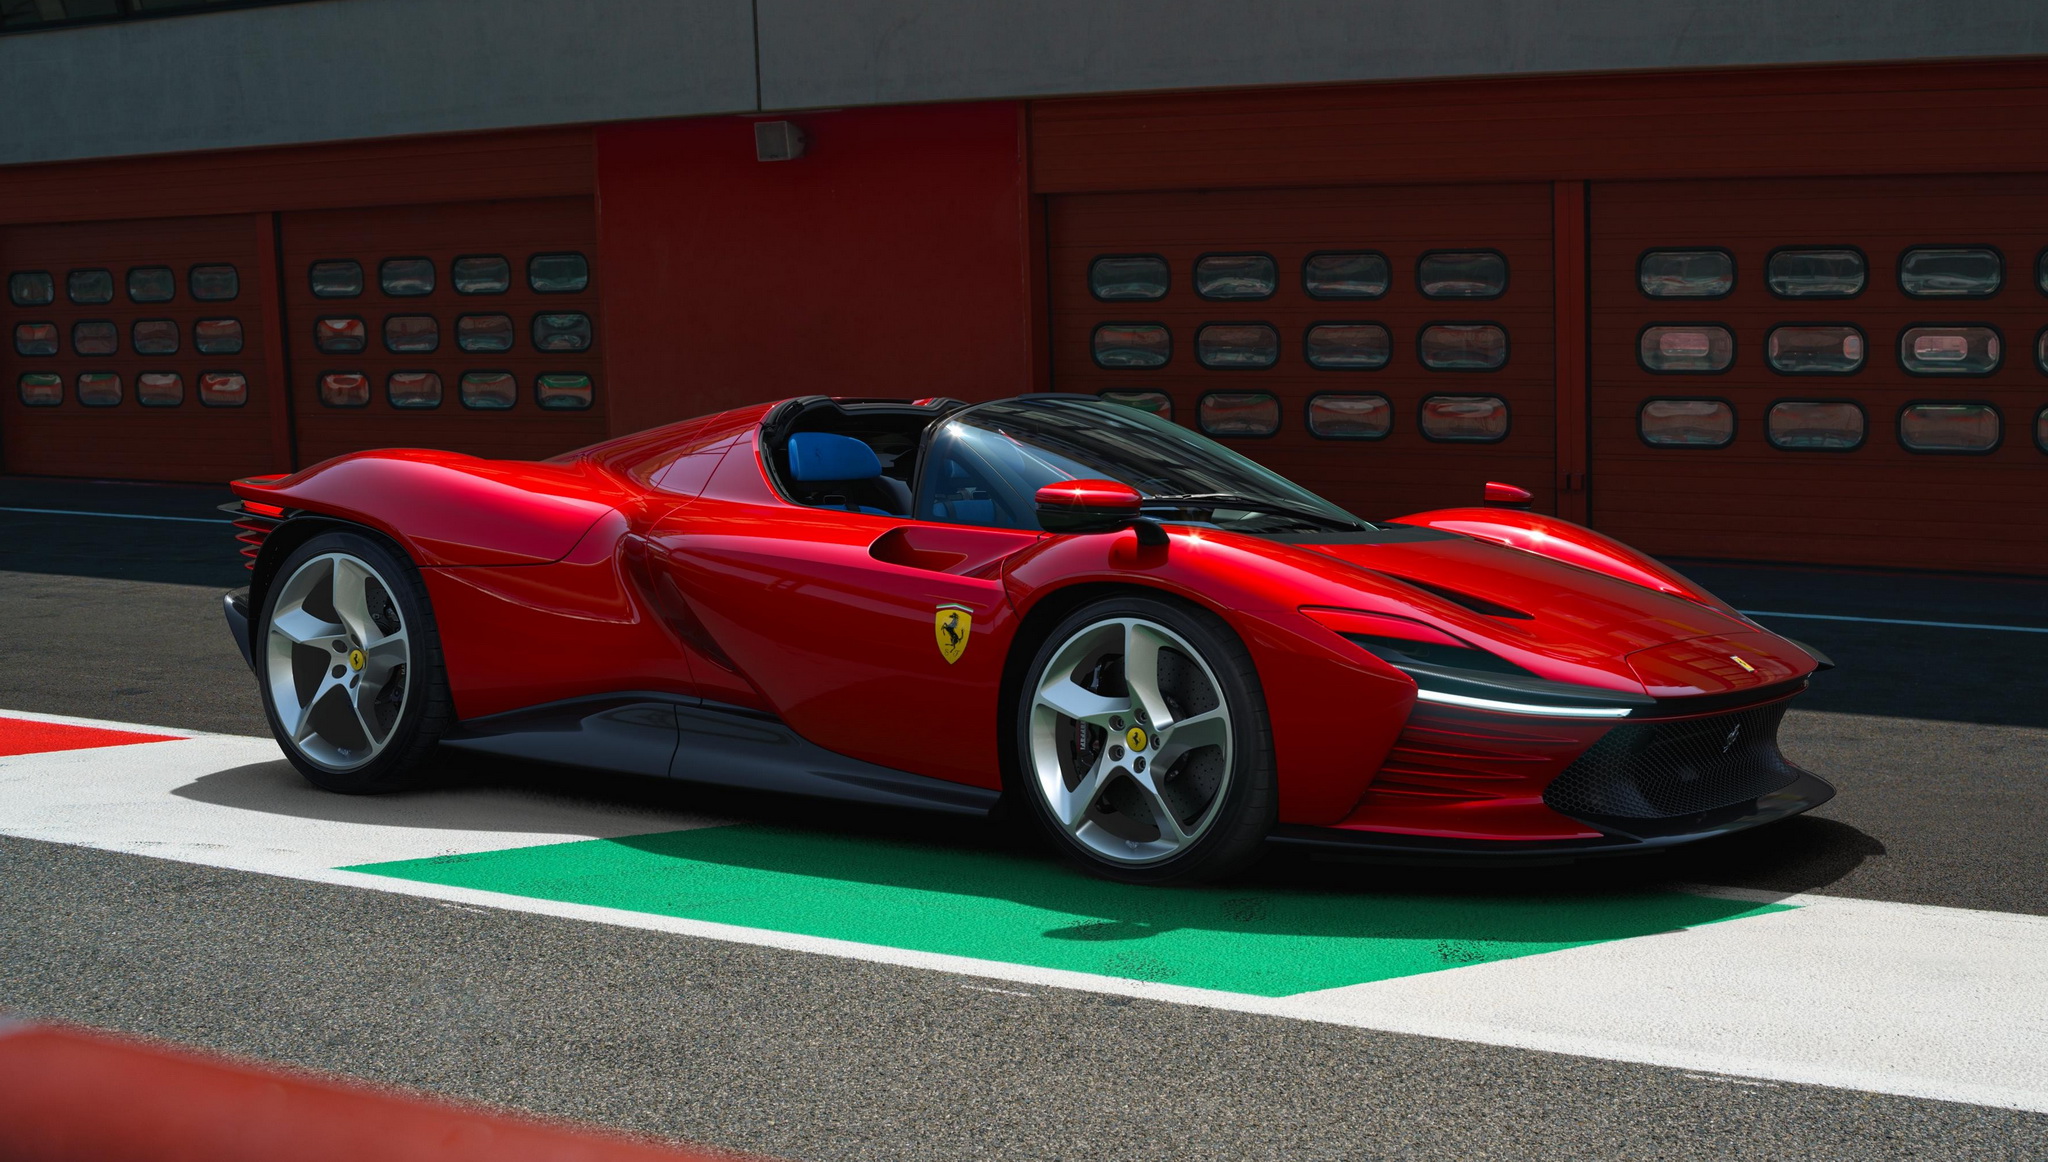 โครตเท่!! Ferrari Daytona SP3 ตัวพิเศษ ขีดสุดของเครื่อง V12 N/A เพียวๆ